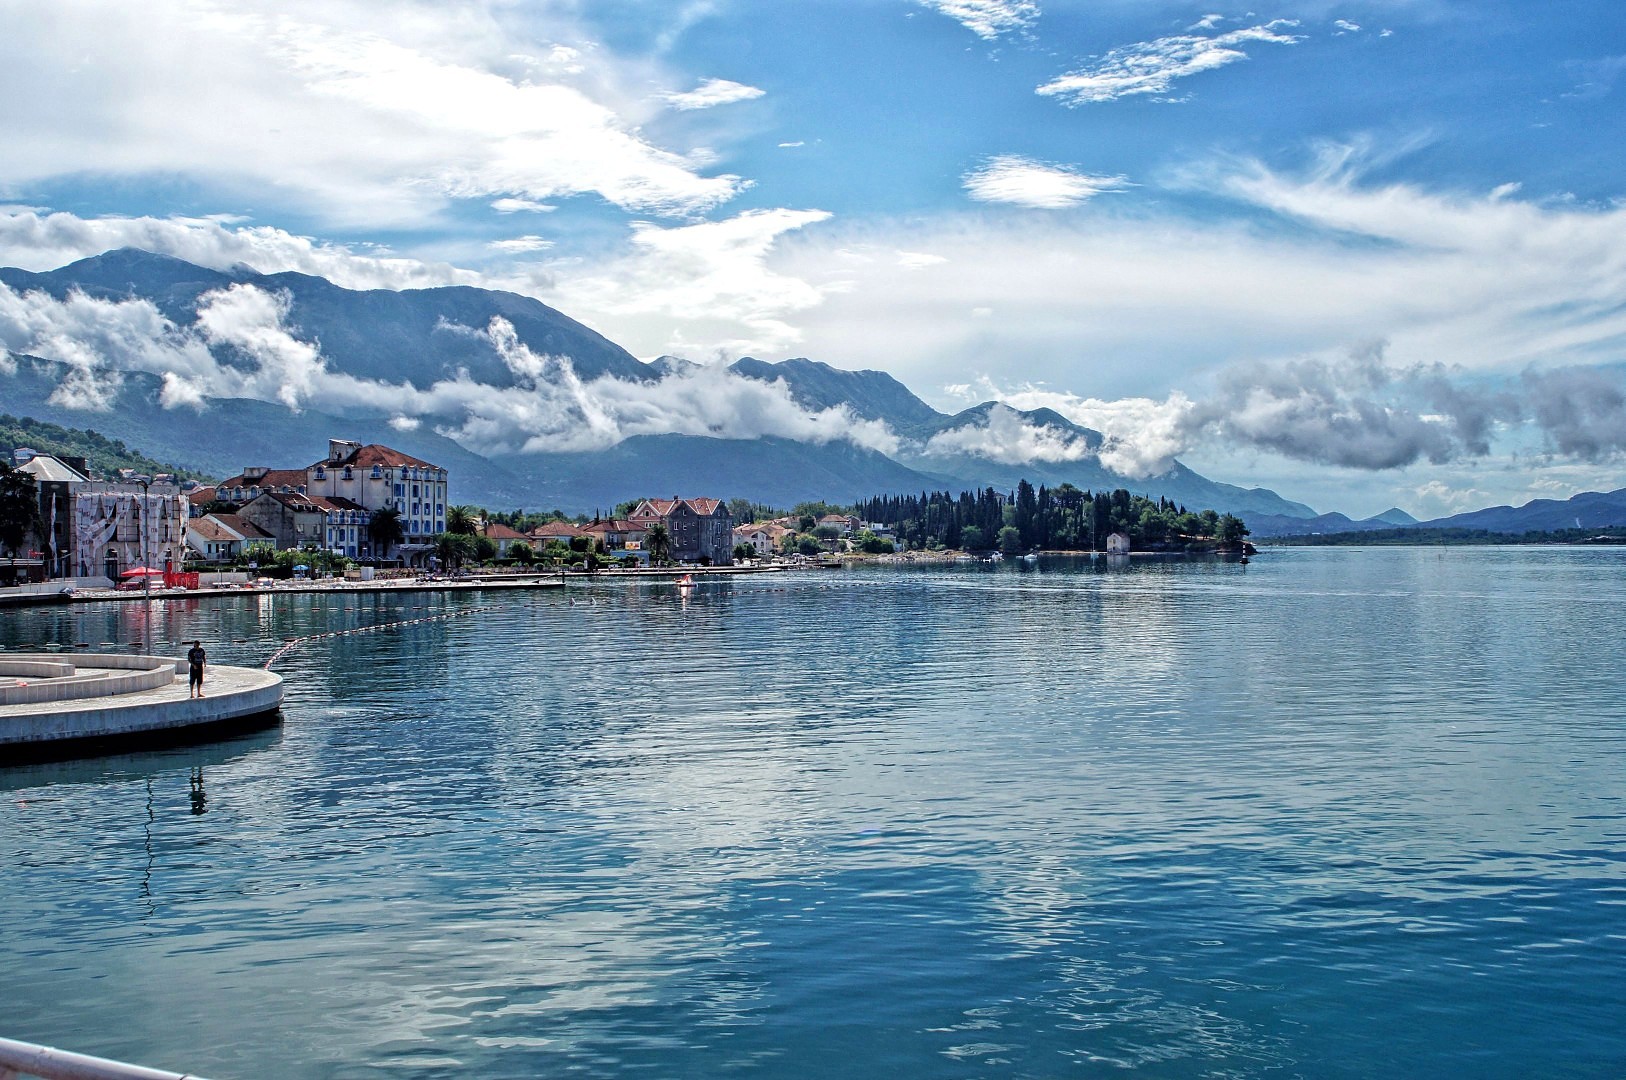 Zatoka Kotorska jedna z najpiękniejszych zatok świata - tutaj Zalew Tivatski 